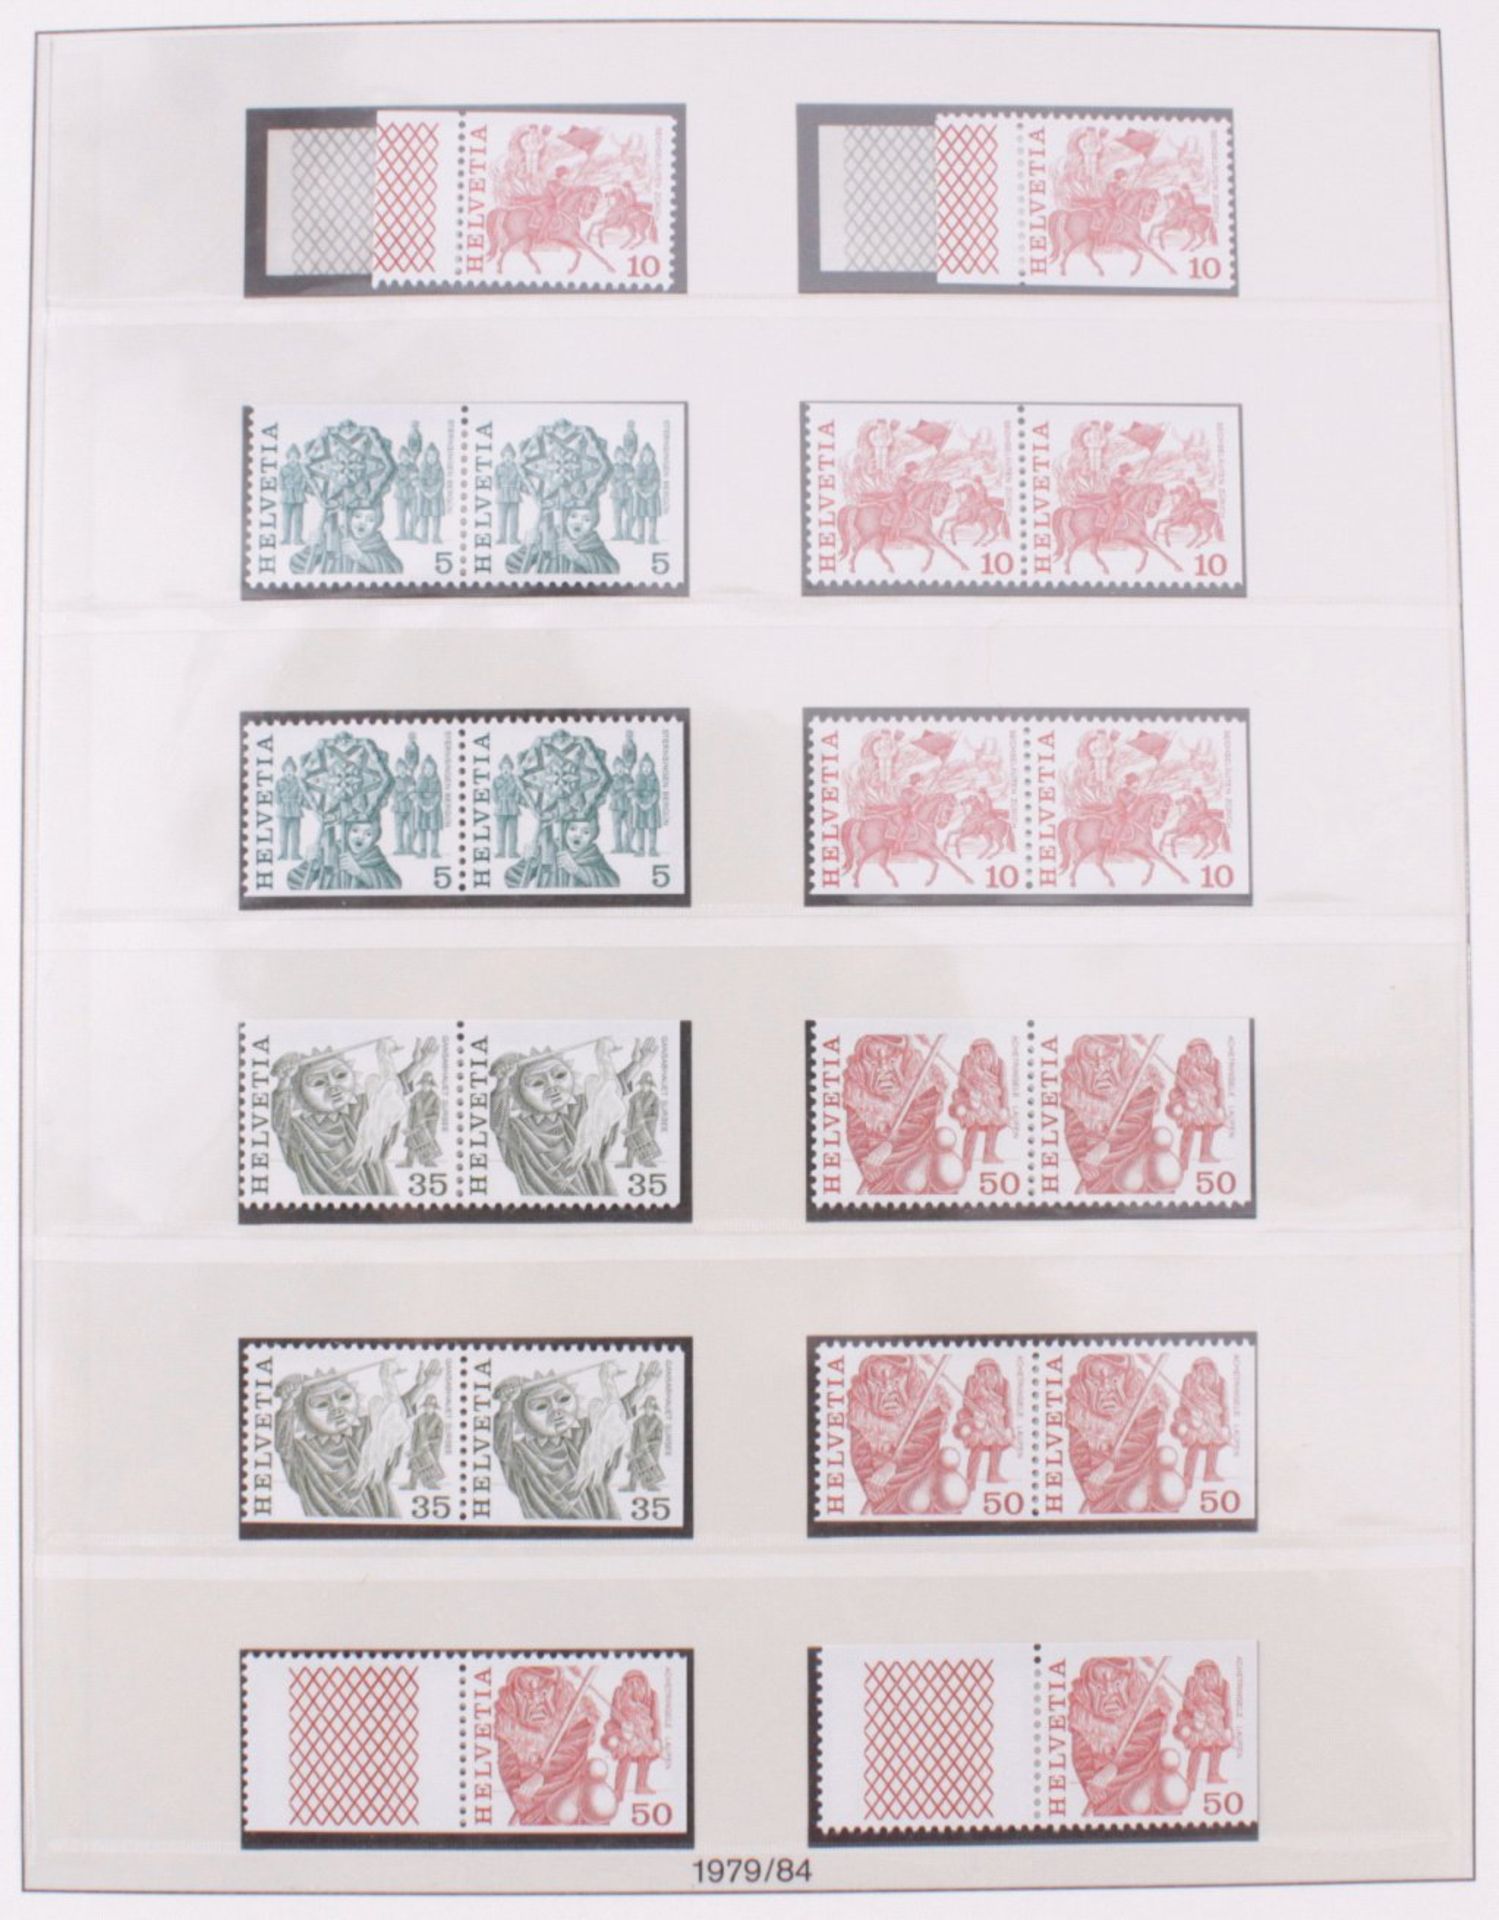 SCHWEIZ 1978-1995; NOMINALE 460,- SCHWEIZER FRANKENpostfrische Sammlung im LINDNER T-Falzlosvordruck - Bild 2 aus 6